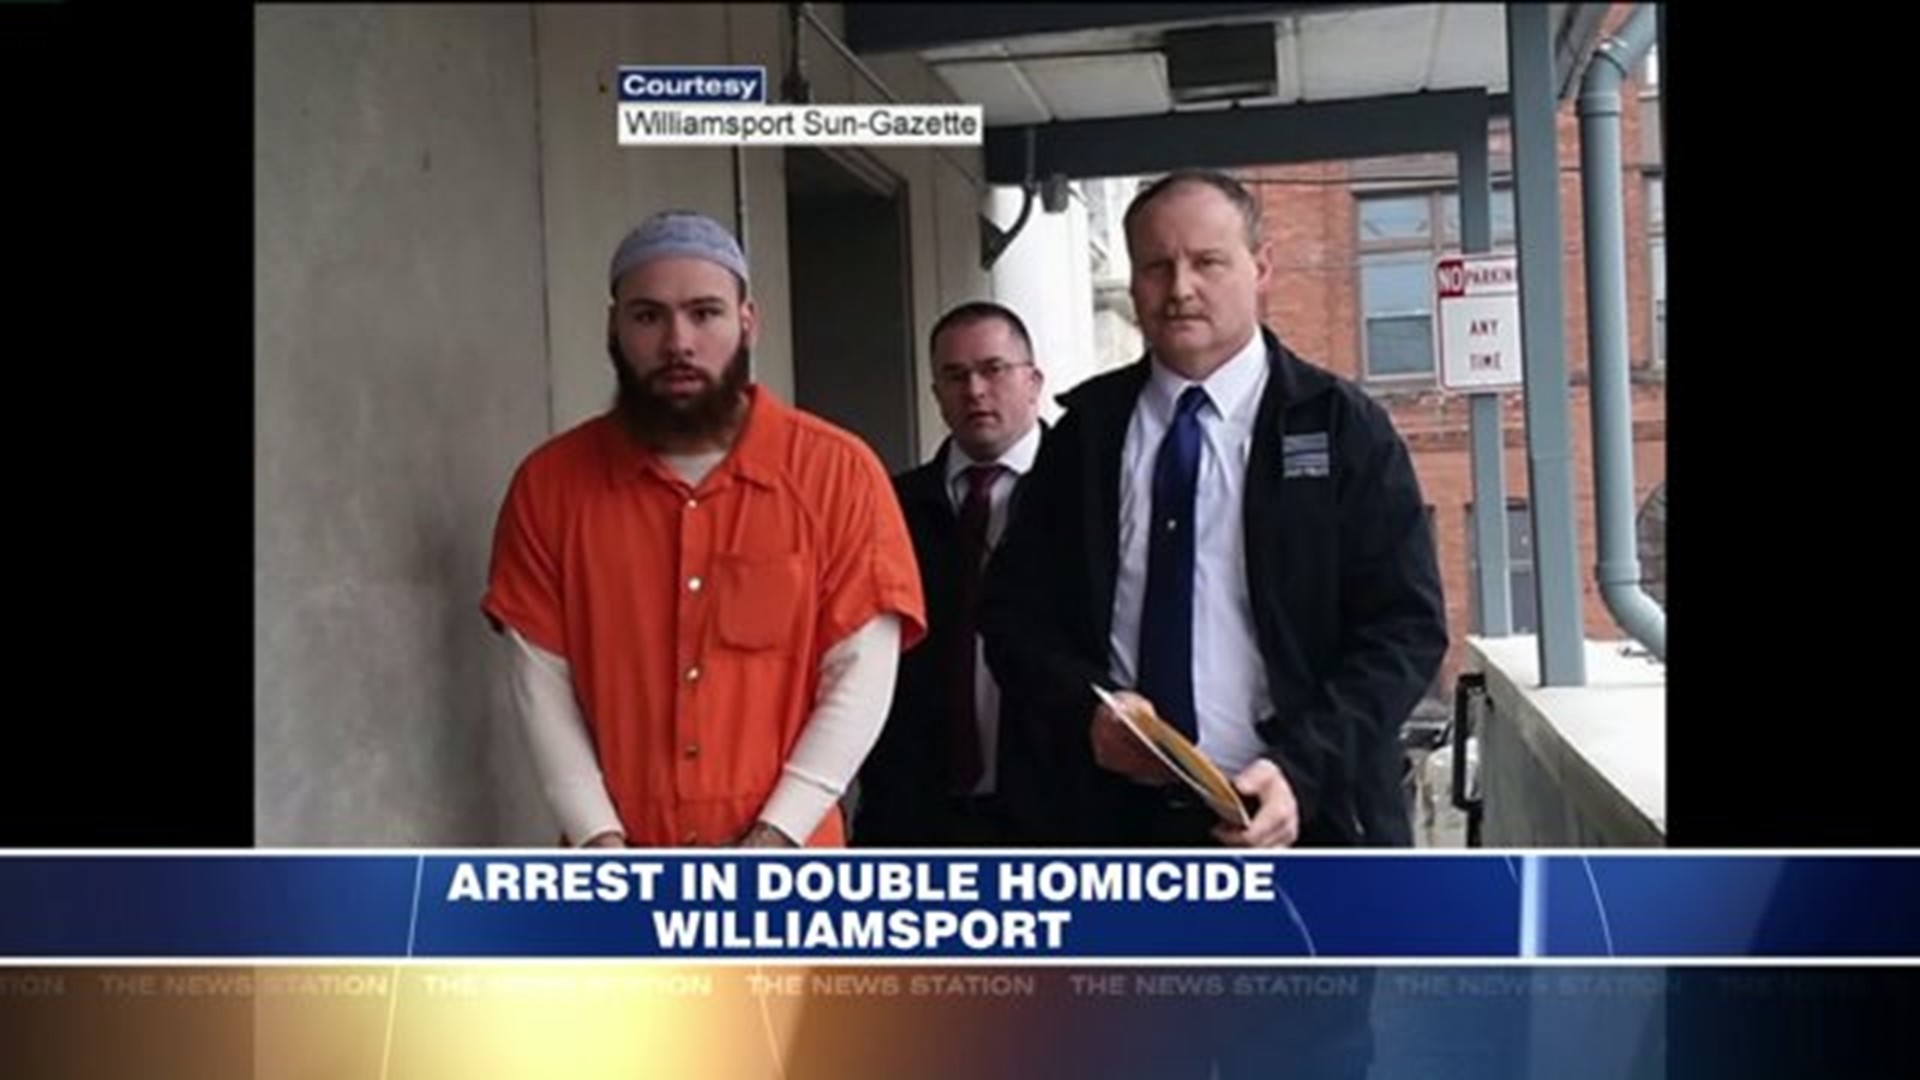 Arrest in Double Homicide in Williamsport